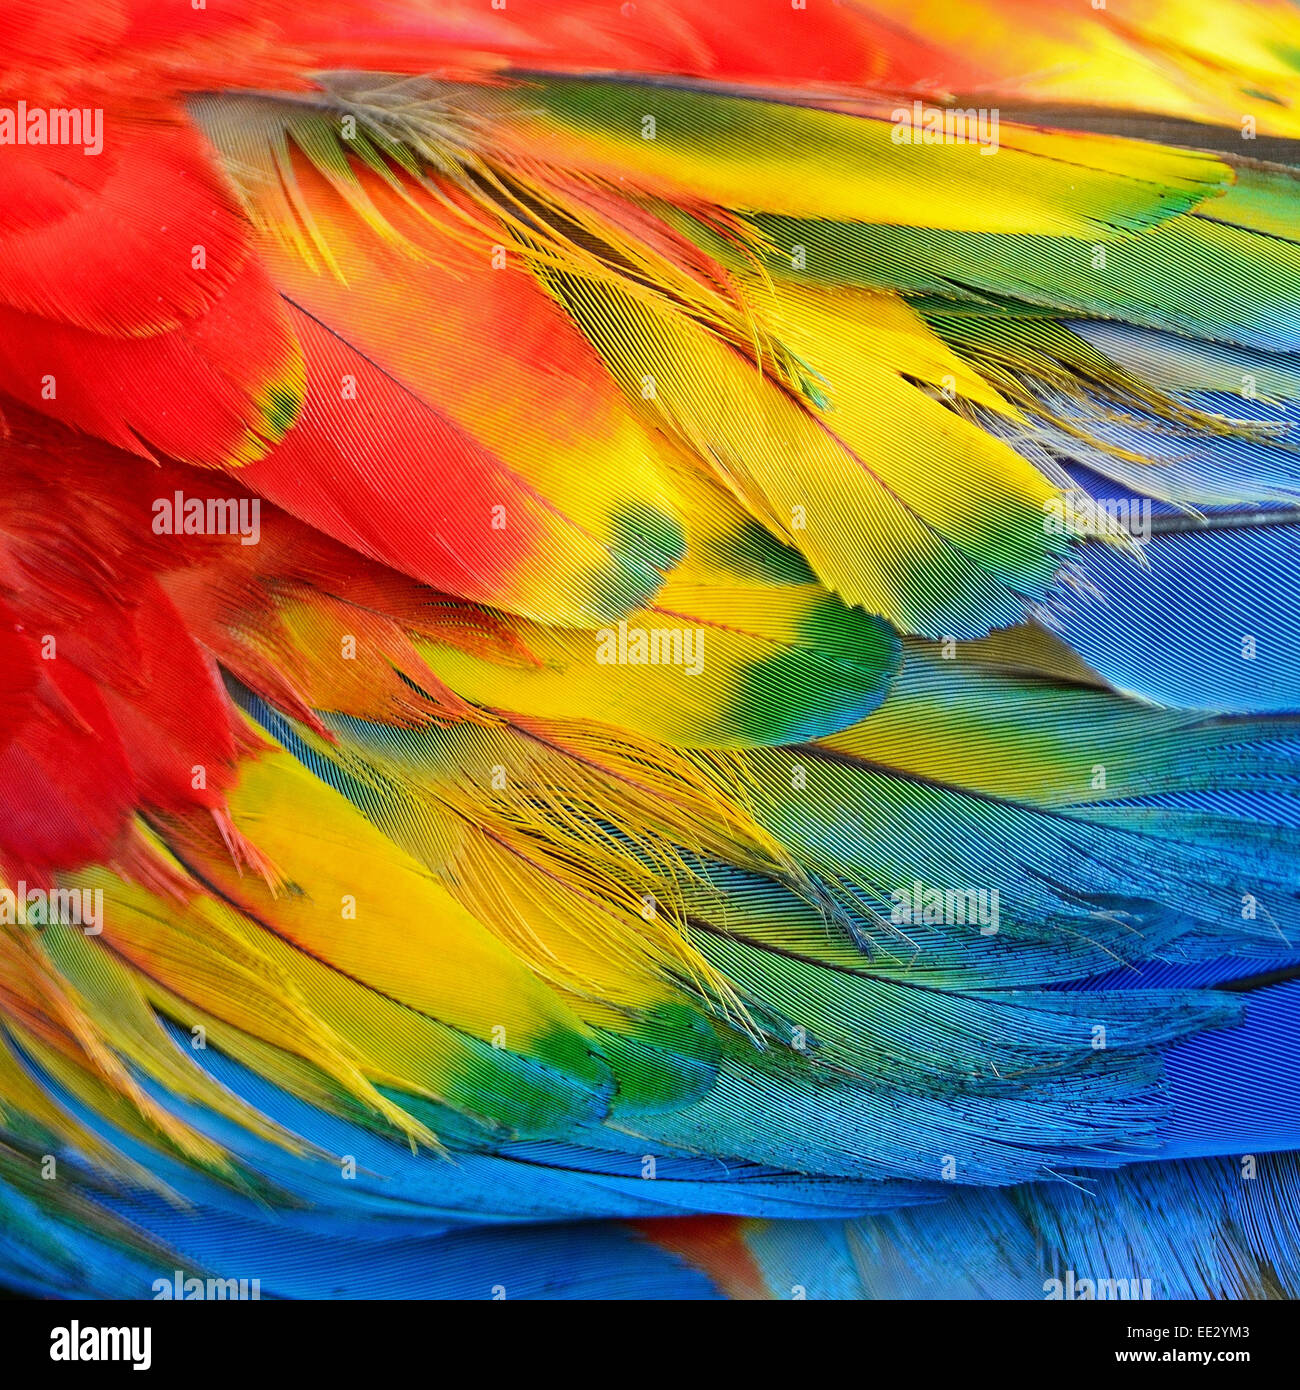 Scarlet Macaw piume e colorati di texture di sfondo Foto Stock